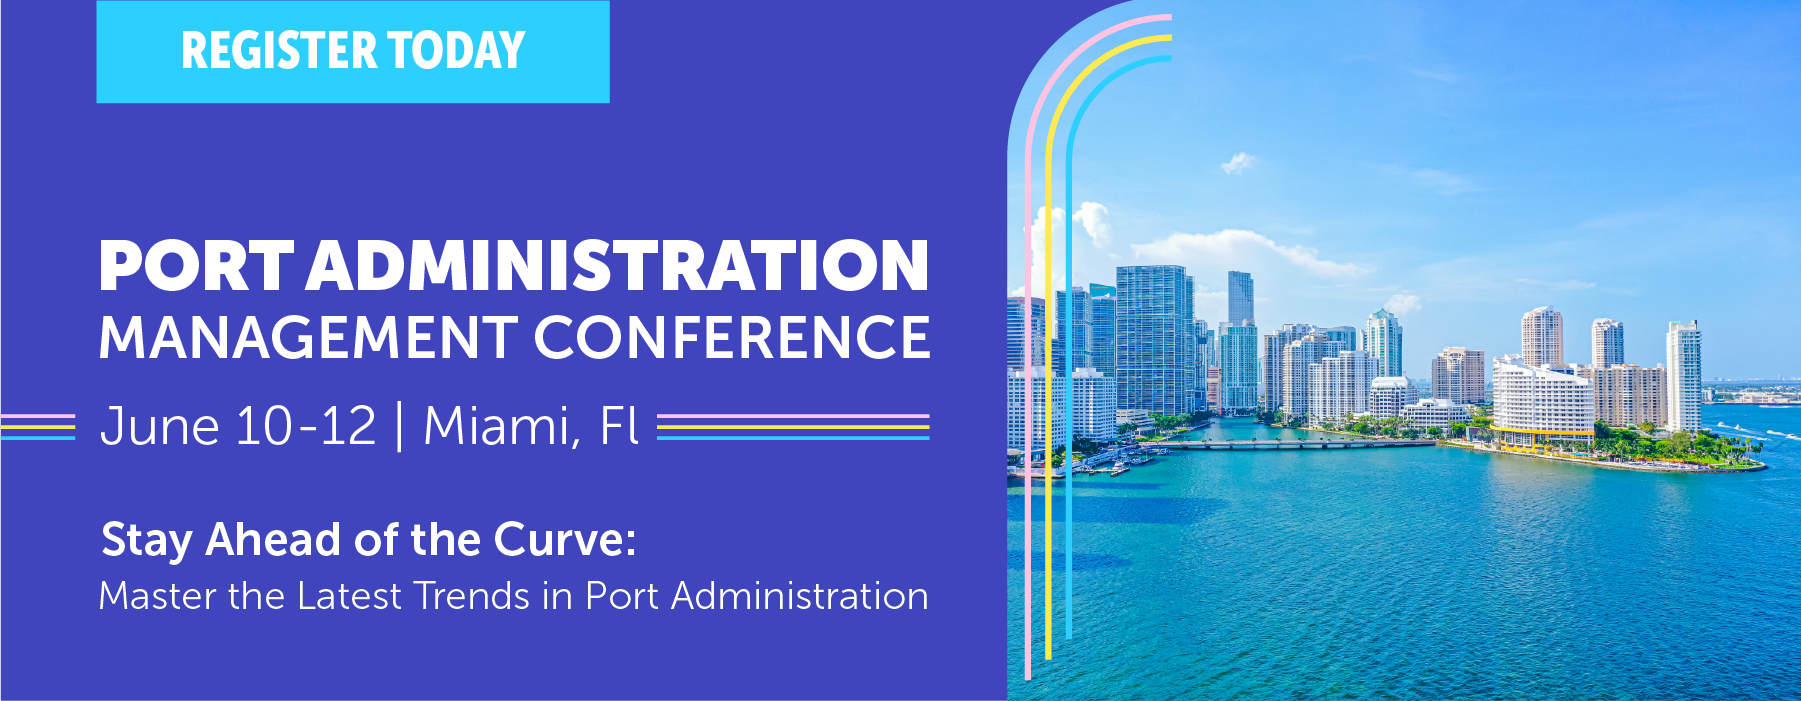 Port Admin Conference Banner Image